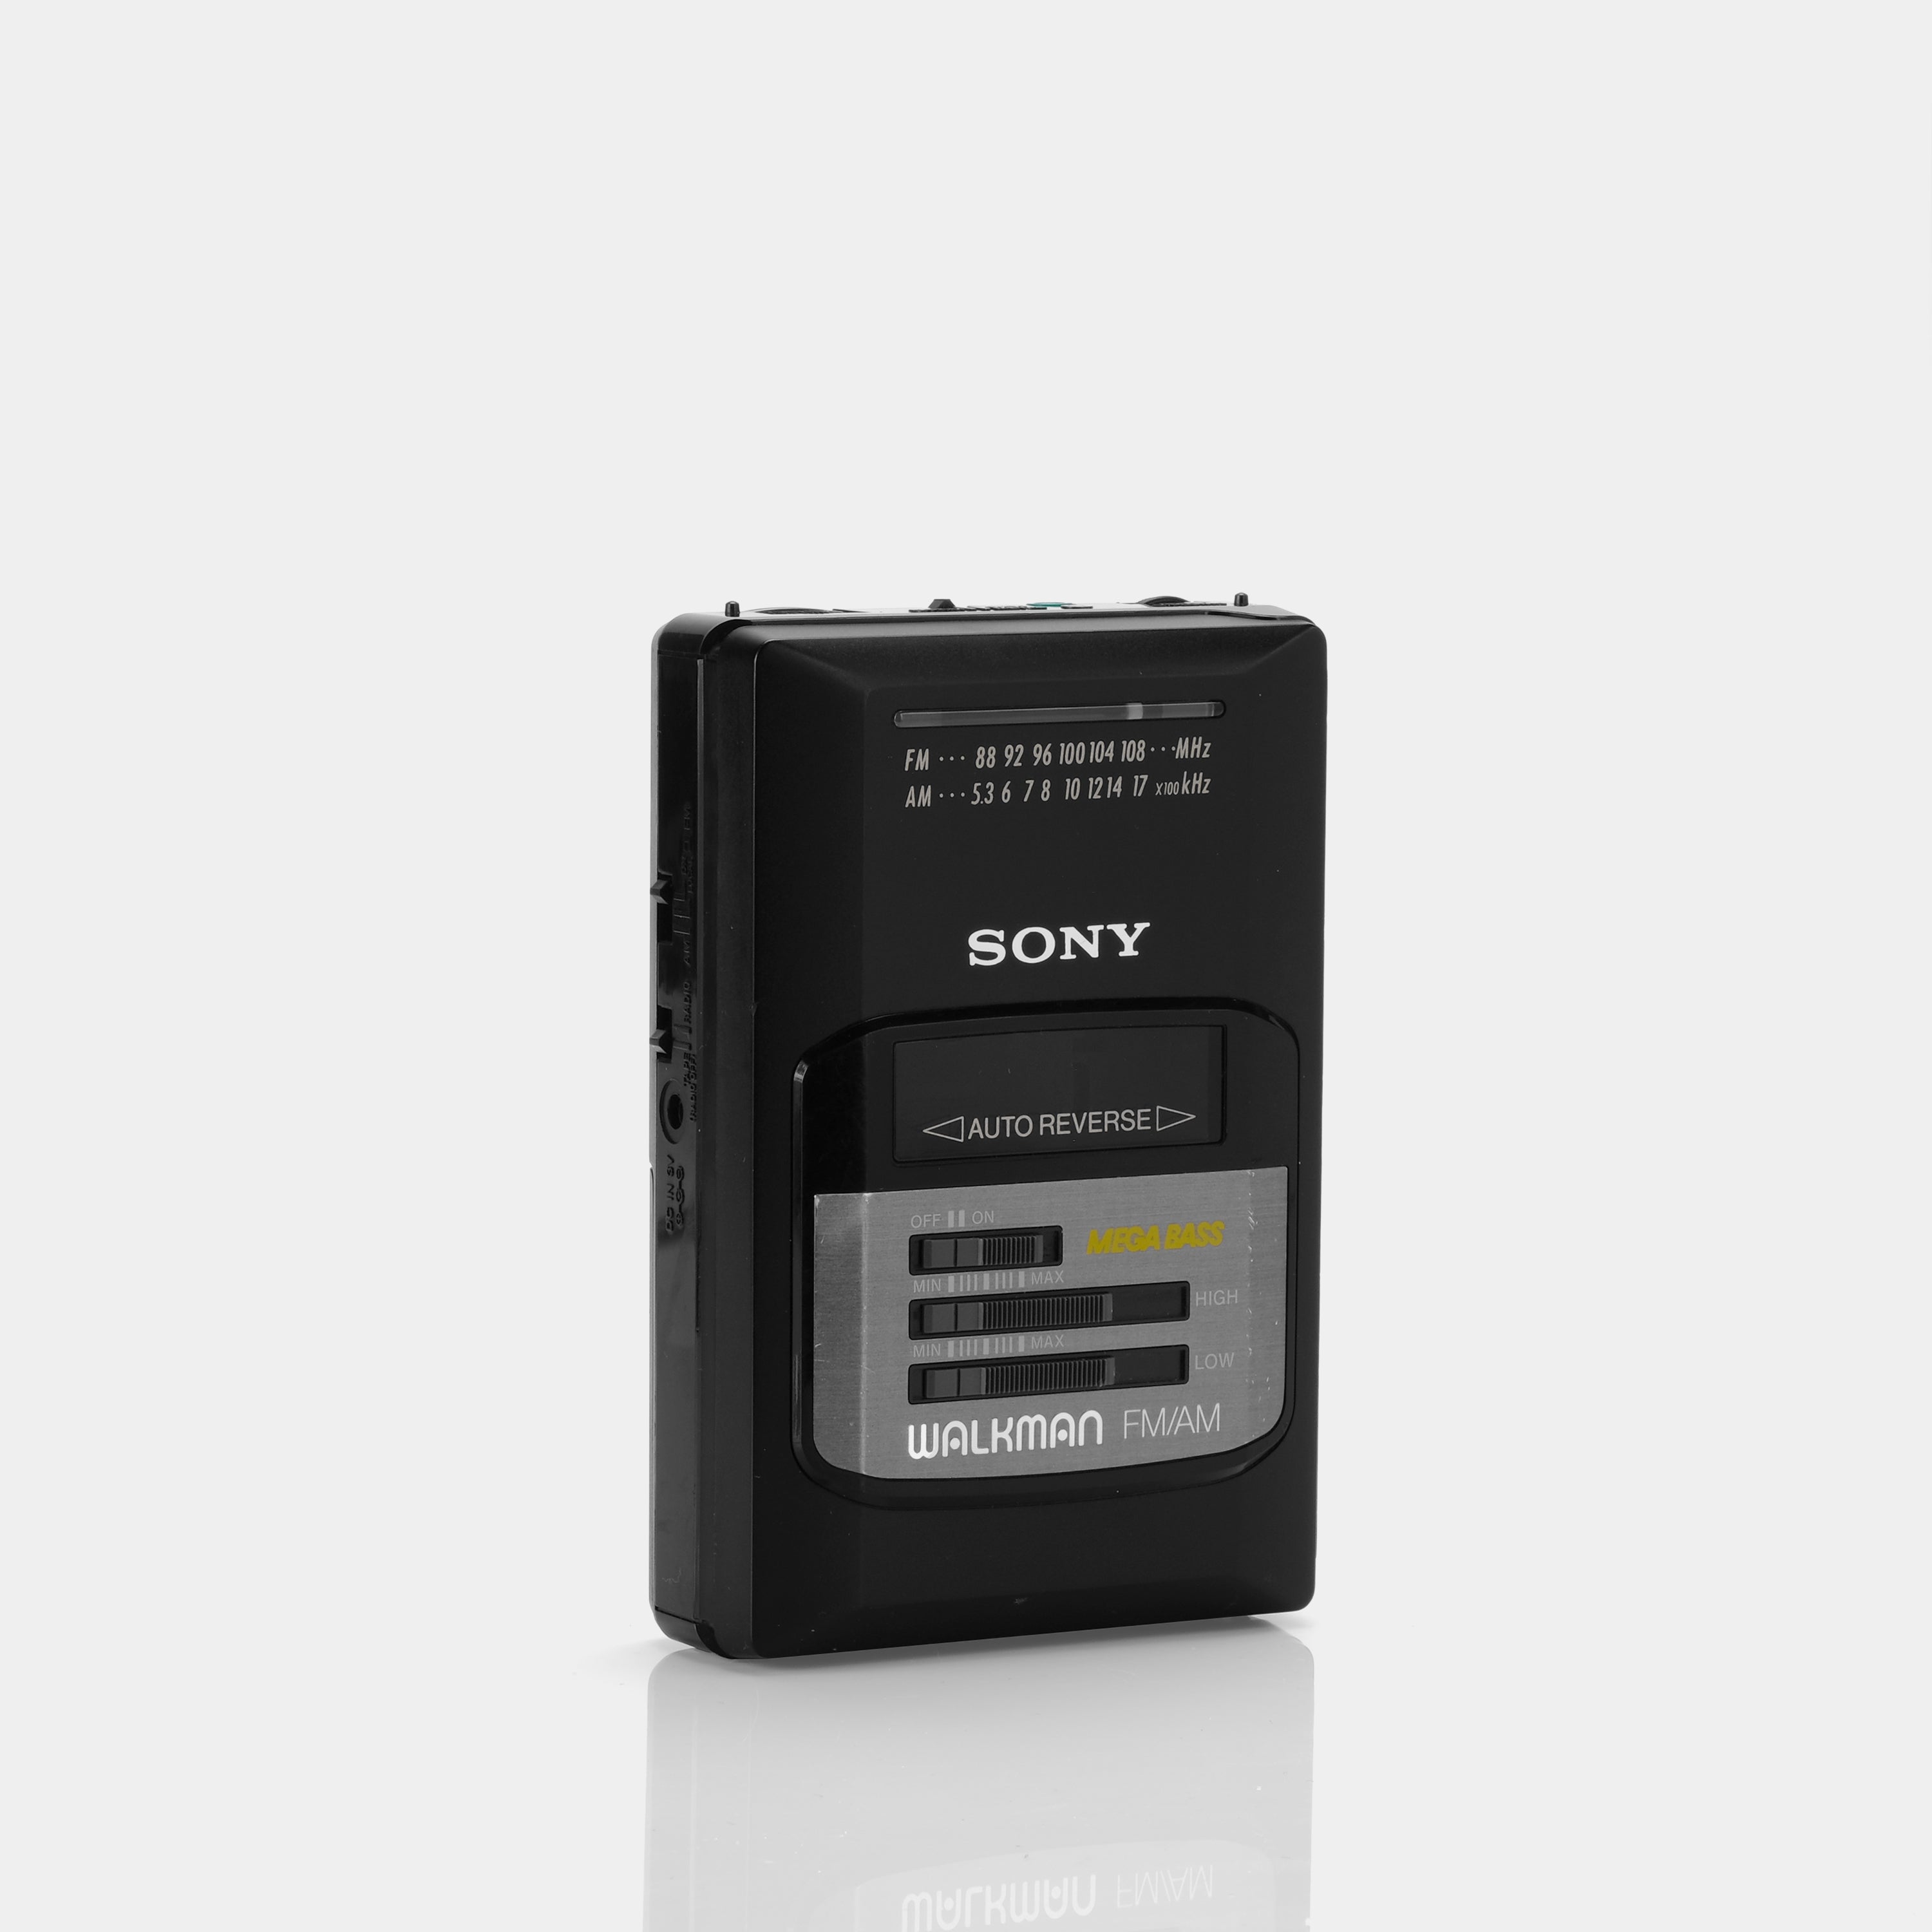 Sony Walkman WM-AF50 MEGA BASS AM/FM Radio Cassette Player (B-Grade)